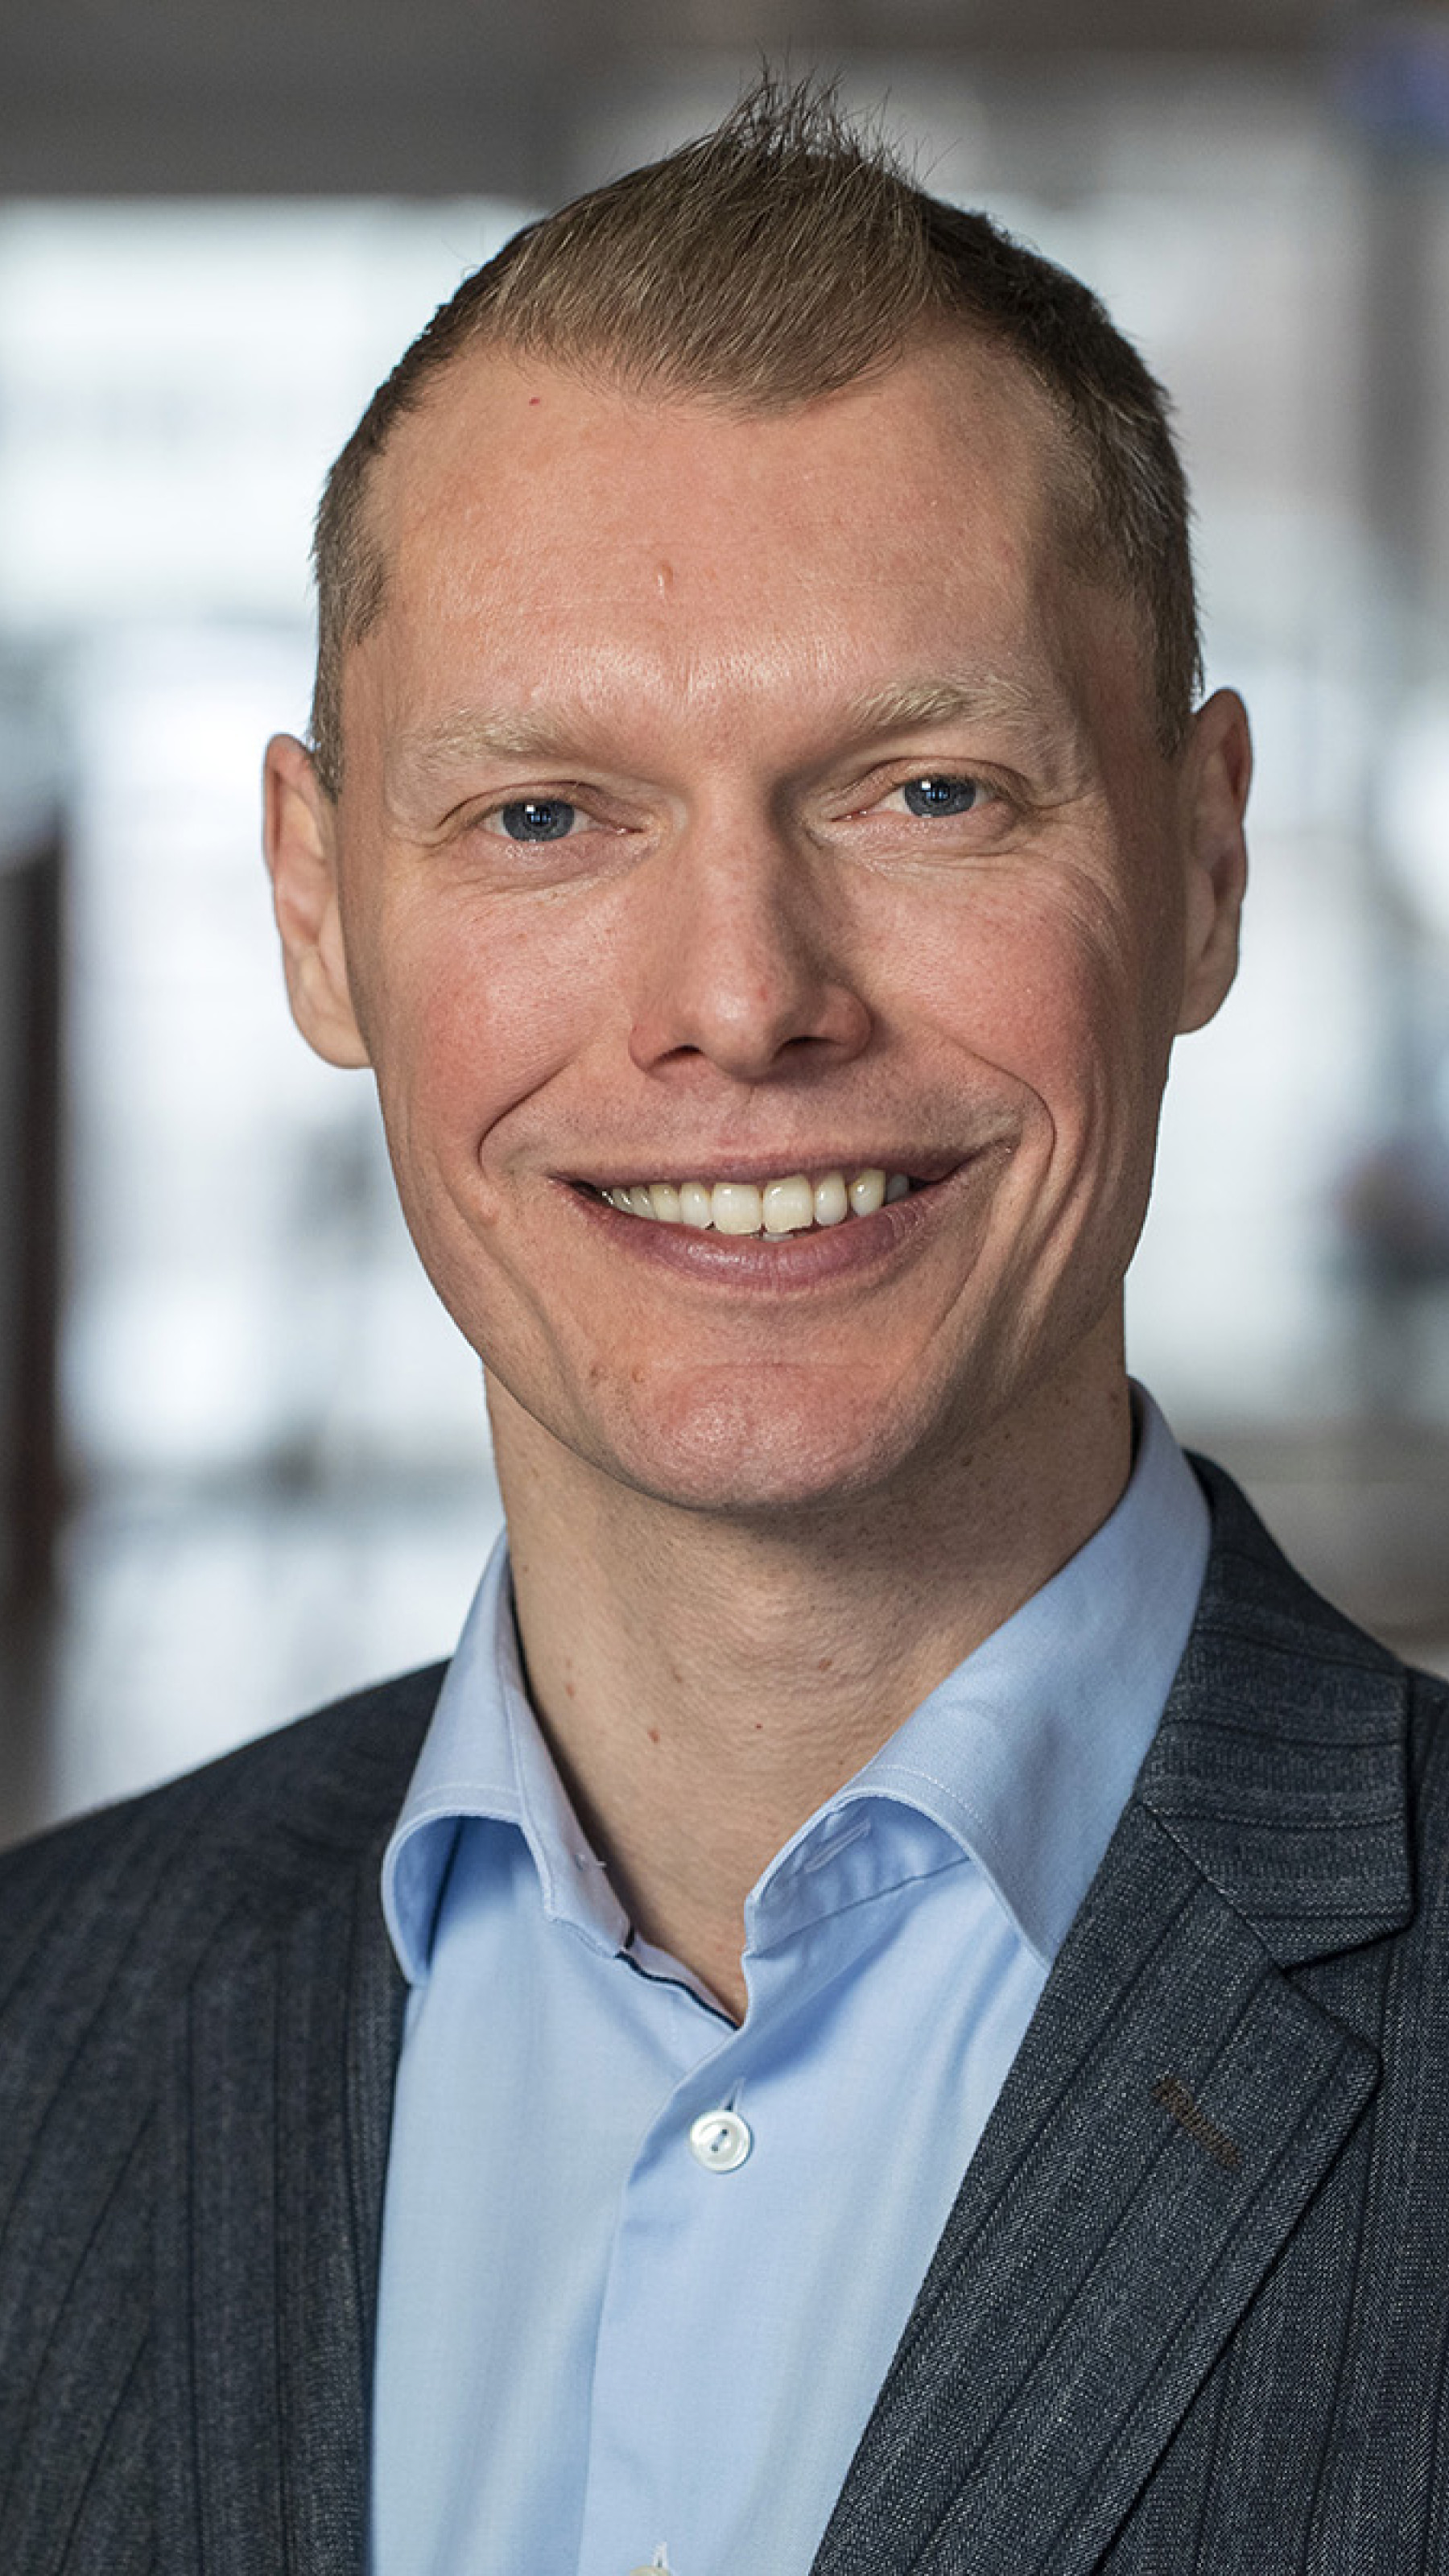 Kædedirektør Thomas Nielsen håber i løbet af det kommende år at kunne præsentere nye bæredygtige produkter, som kan bidrage til at skabe flere loyale kunder til Coop 365